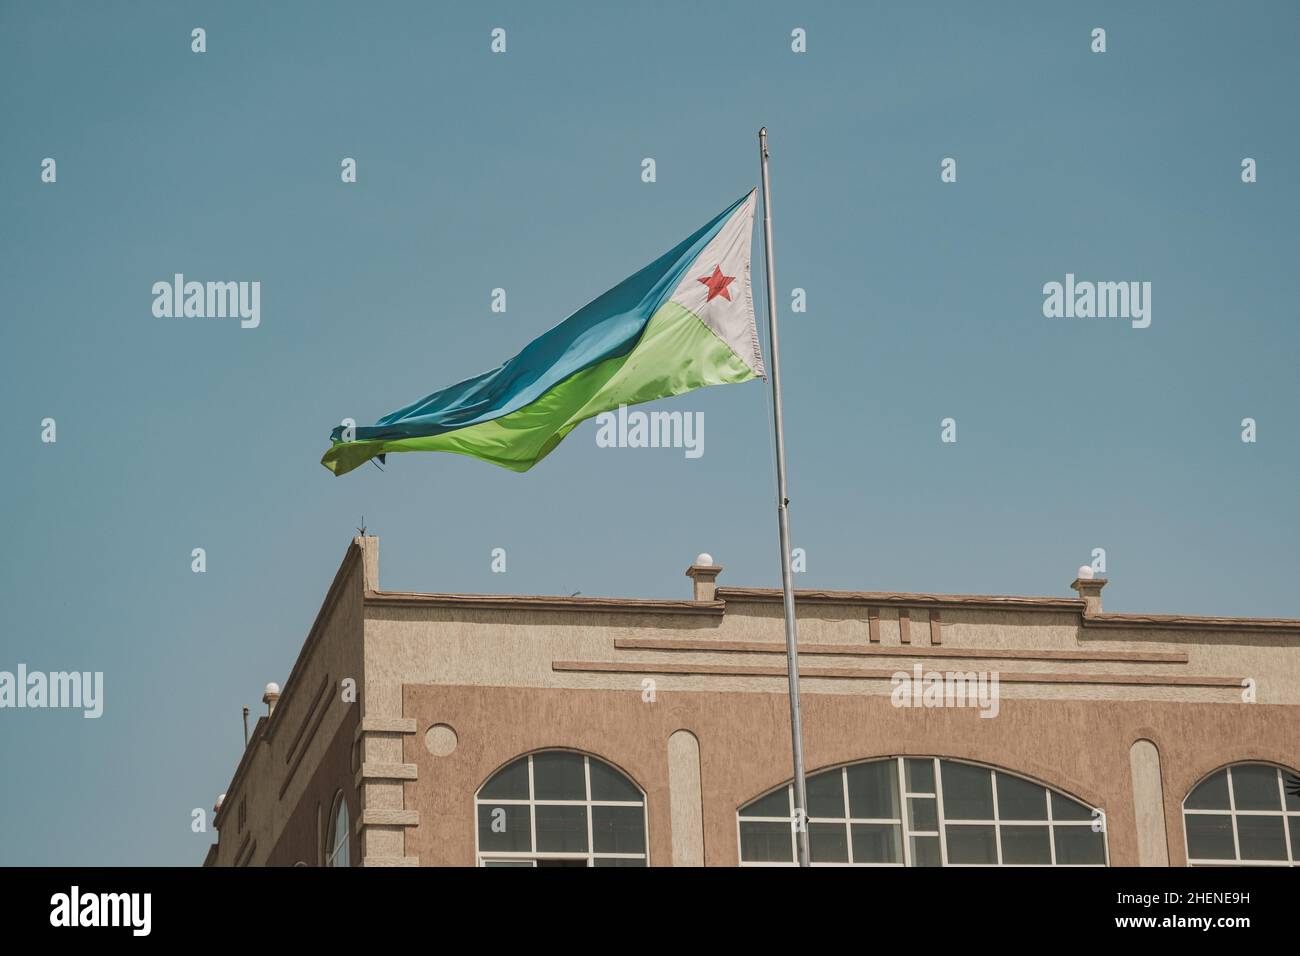 Djibouti, Djibouti - 21 de mayo de 2021: Bandera de Djibouti ondeando en Djibouti. Fotografía editorial en Yibuti. Foto de stock